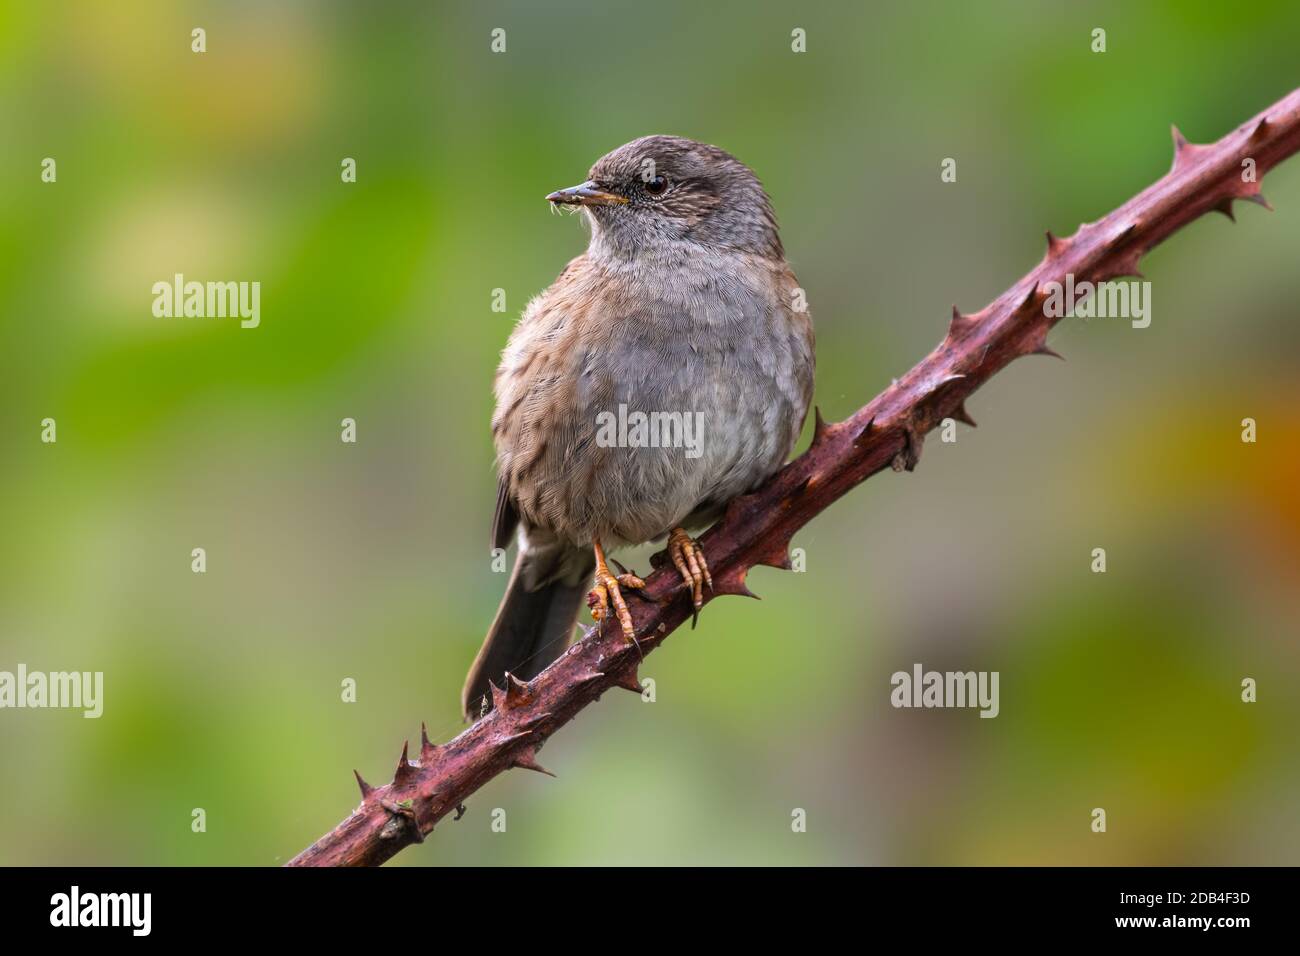 Un oiseau de Dunnock adulte (Prunella modularis), un petit passereau ou oiseau perçant, perchée sur une branche d'arbre en automne dans West Sussex, Angleterre, Royaume-Uni. Banque D'Images